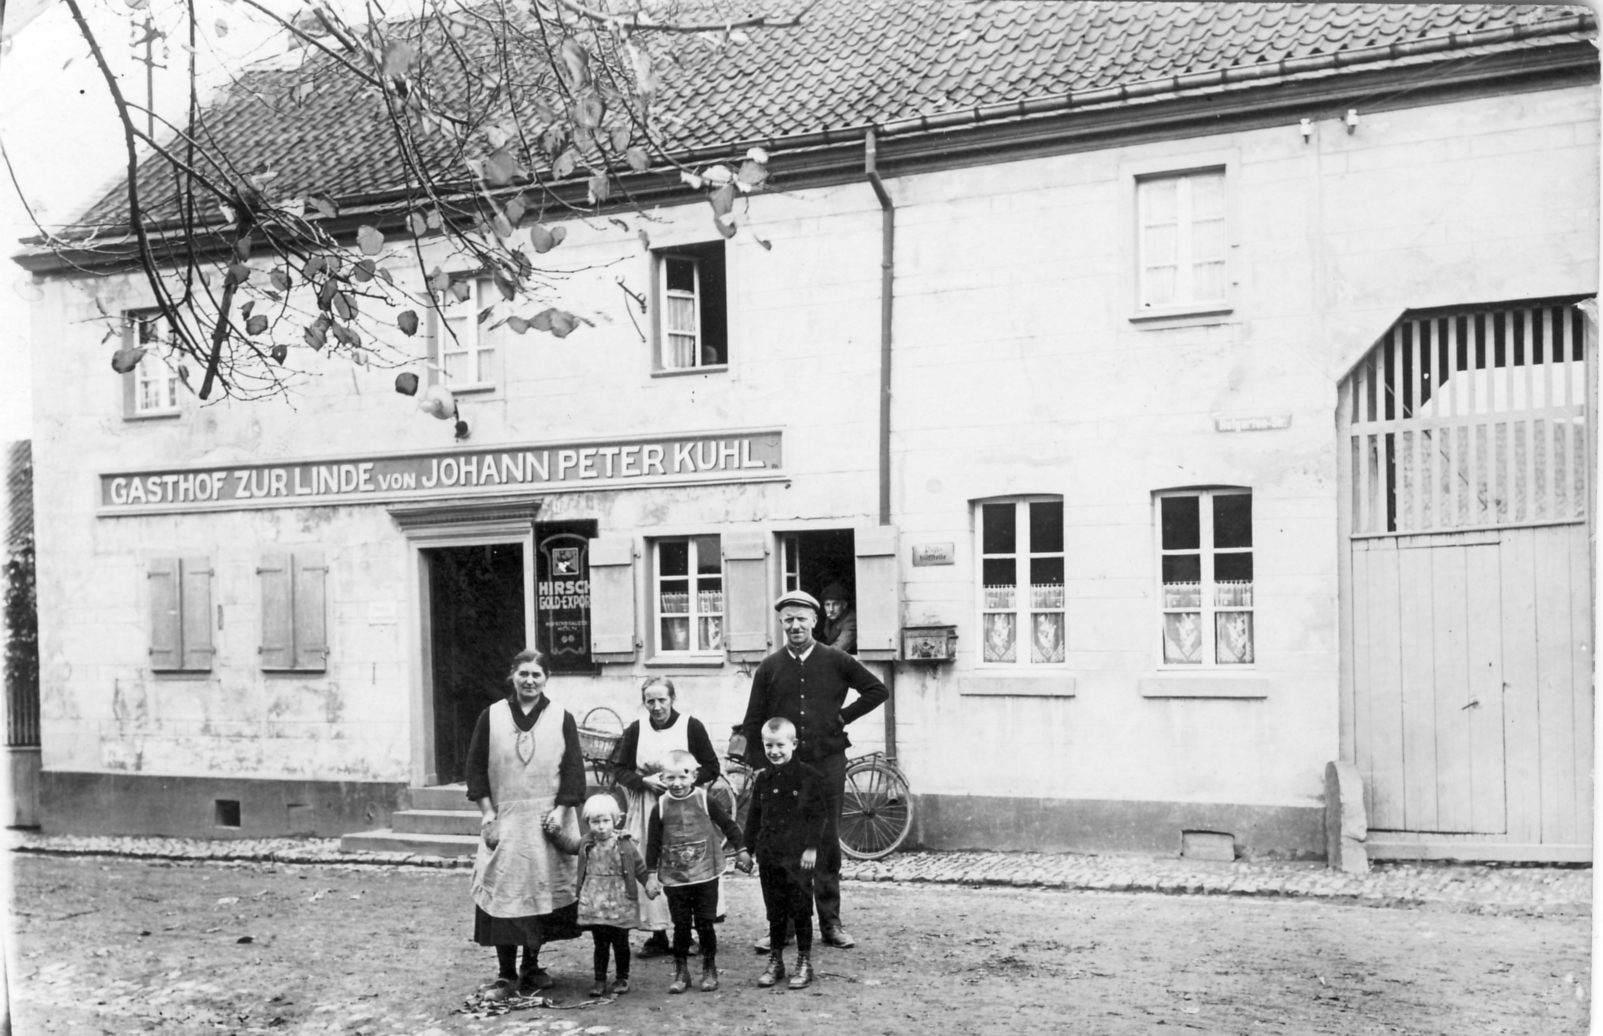 Gasthof zur Linde in Meindorf mit der Gastronomenfamilie Kuhl um 1928